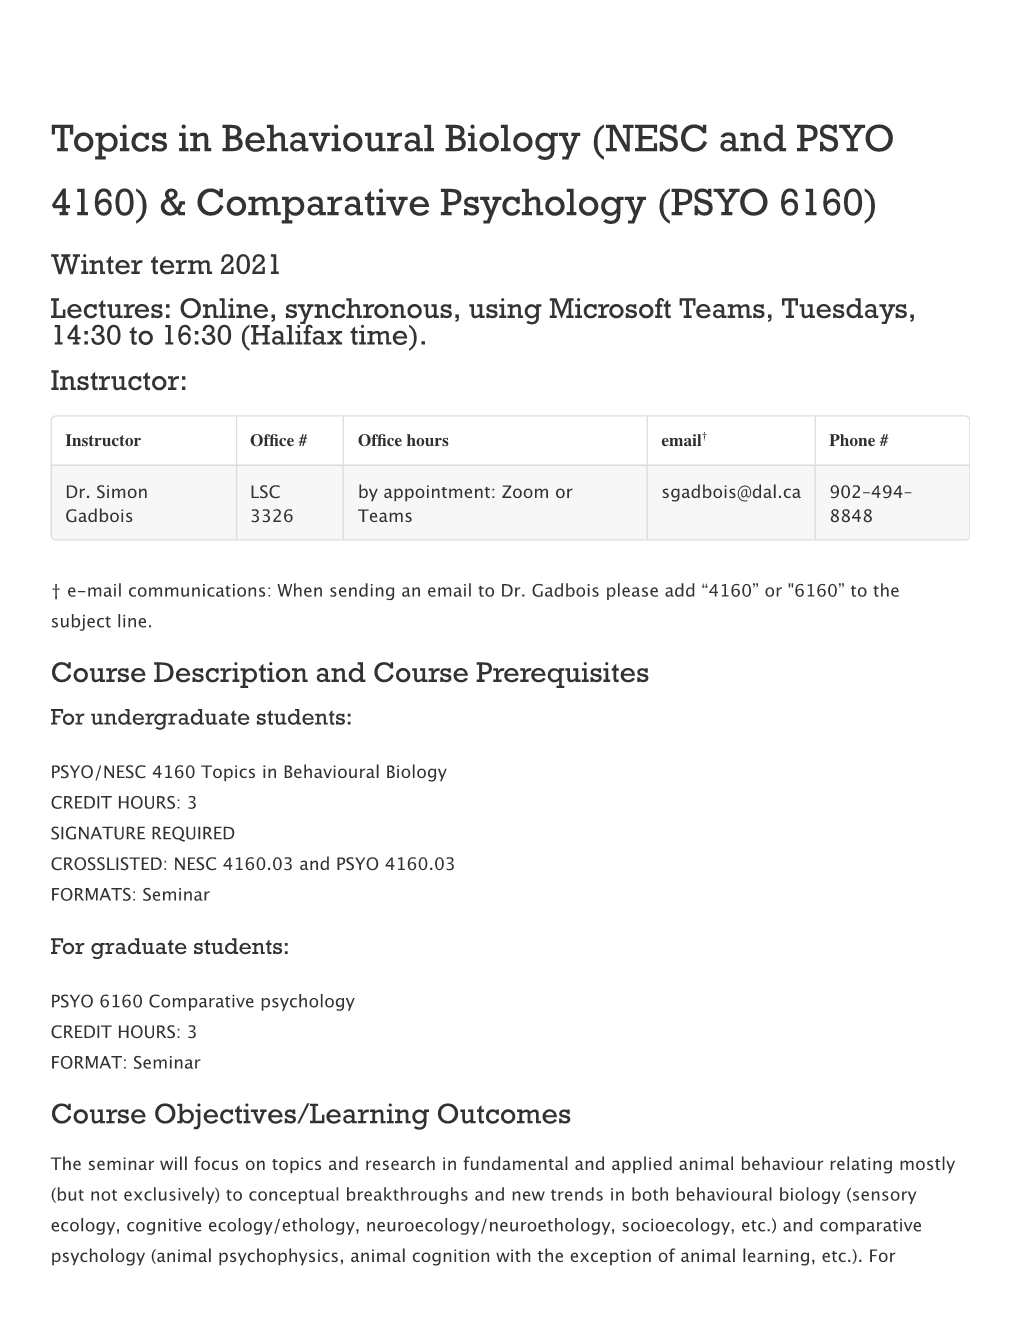 Comparative Psychology (PSYO 6160)